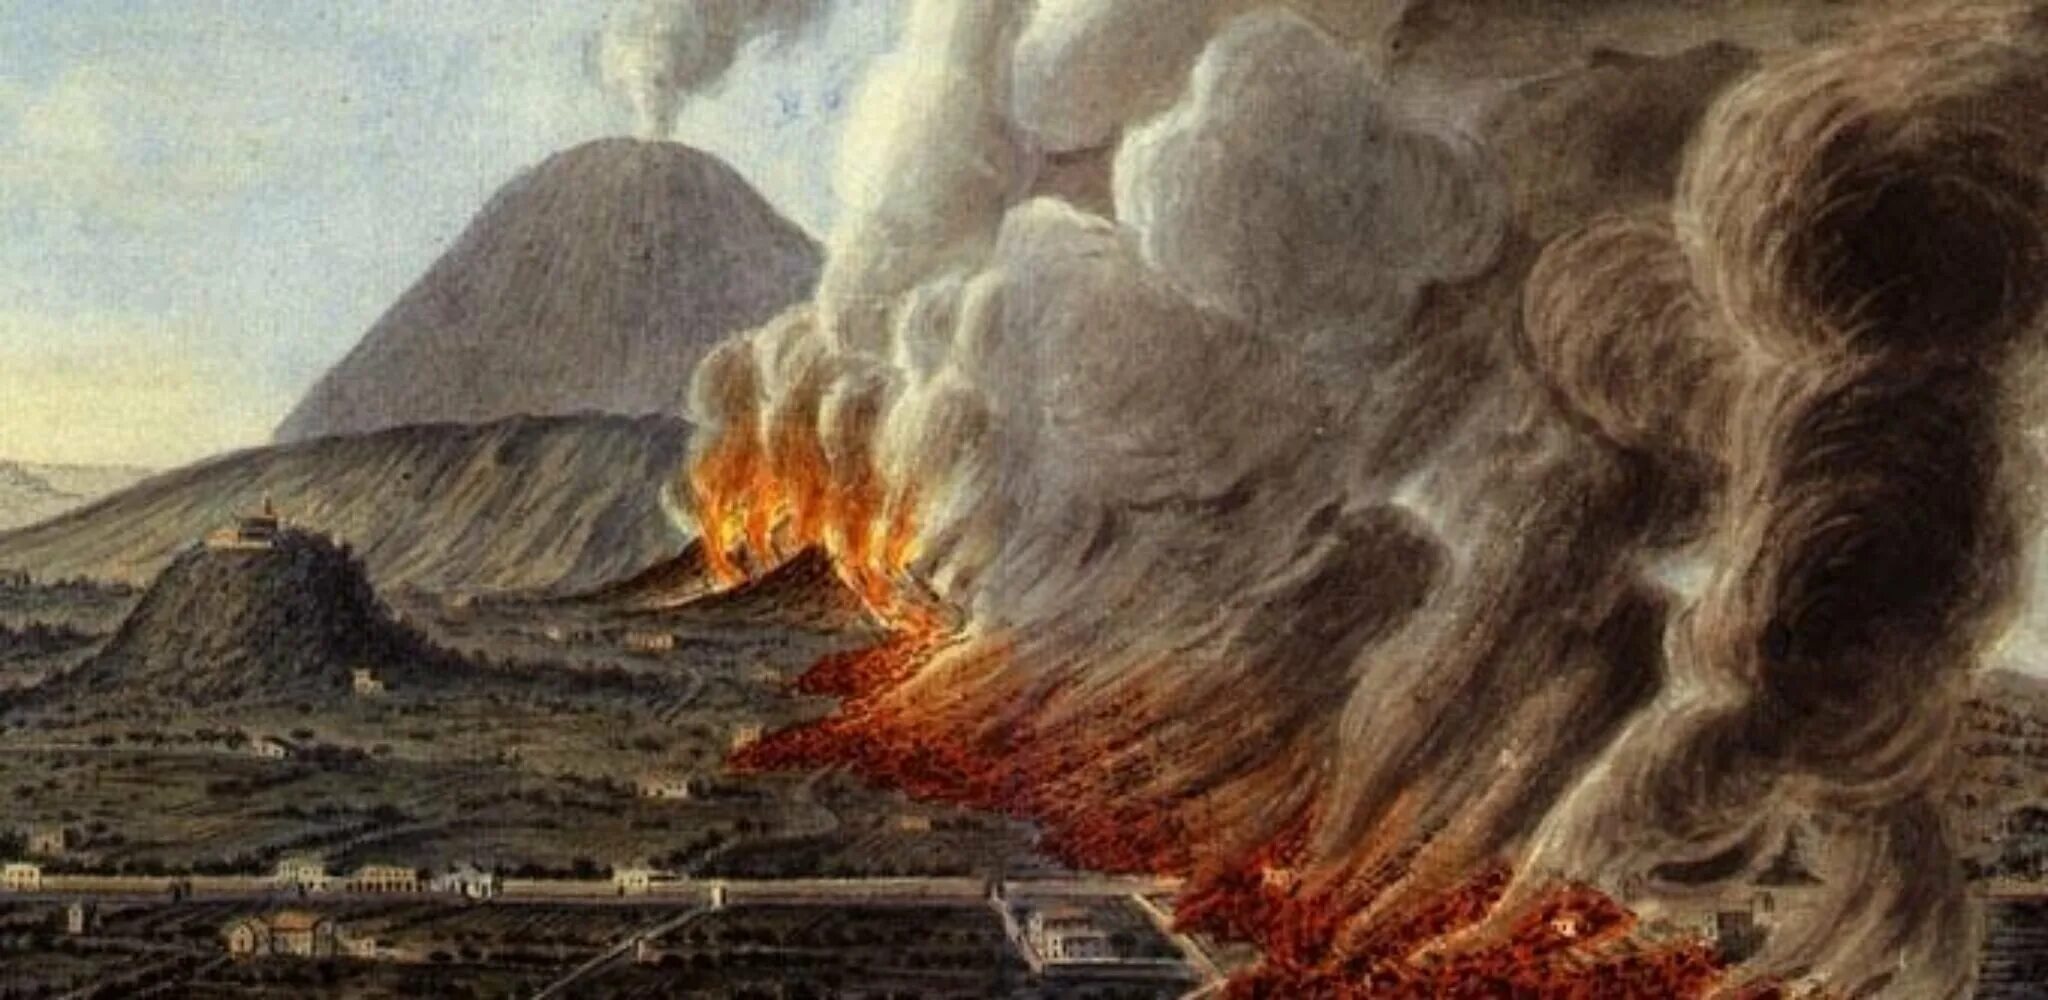 Действует ли вулкан везувий. Извержение вулкана Везувия в 79 году. Извержение Везувия Помпеи. Извержение Везувия в 79 Помпеи. Вулкан Везувий извержение Помпеи.